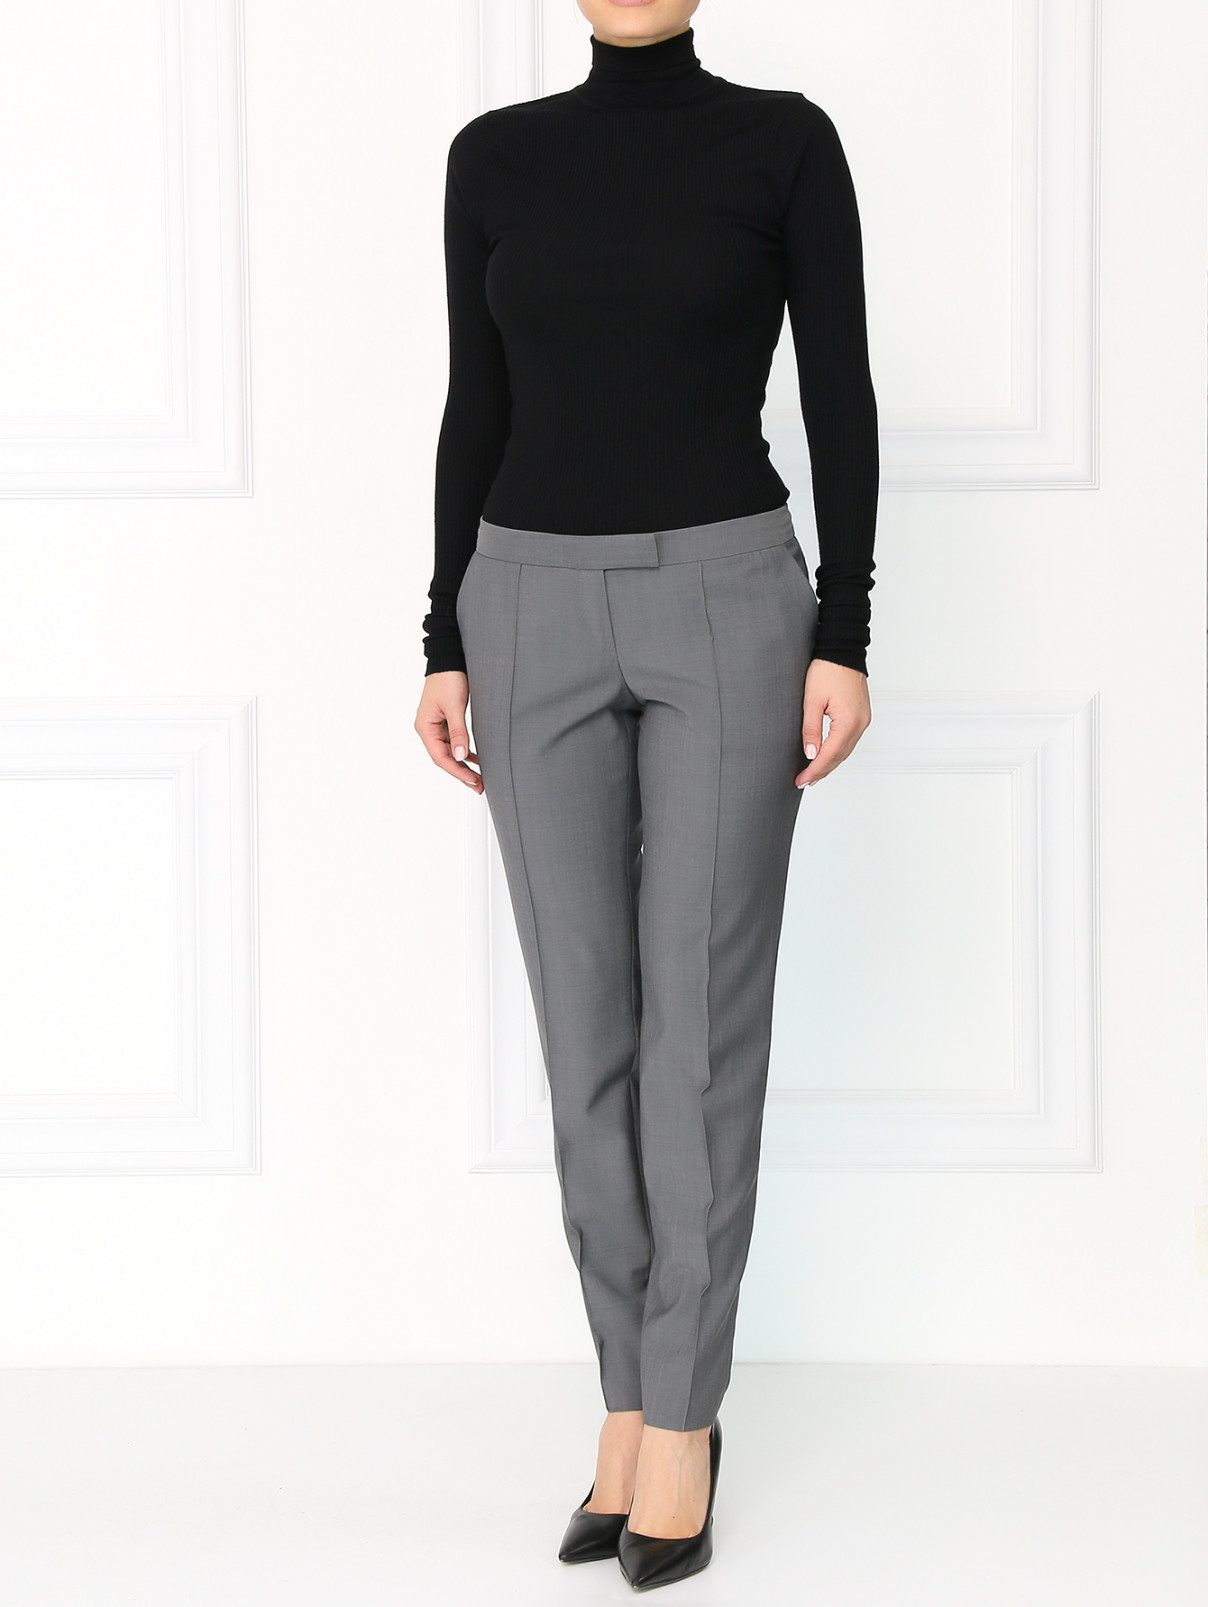 Узкие брюки из шерсти Barbara Bui  –  Модель Общий вид  – Цвет:  Серый